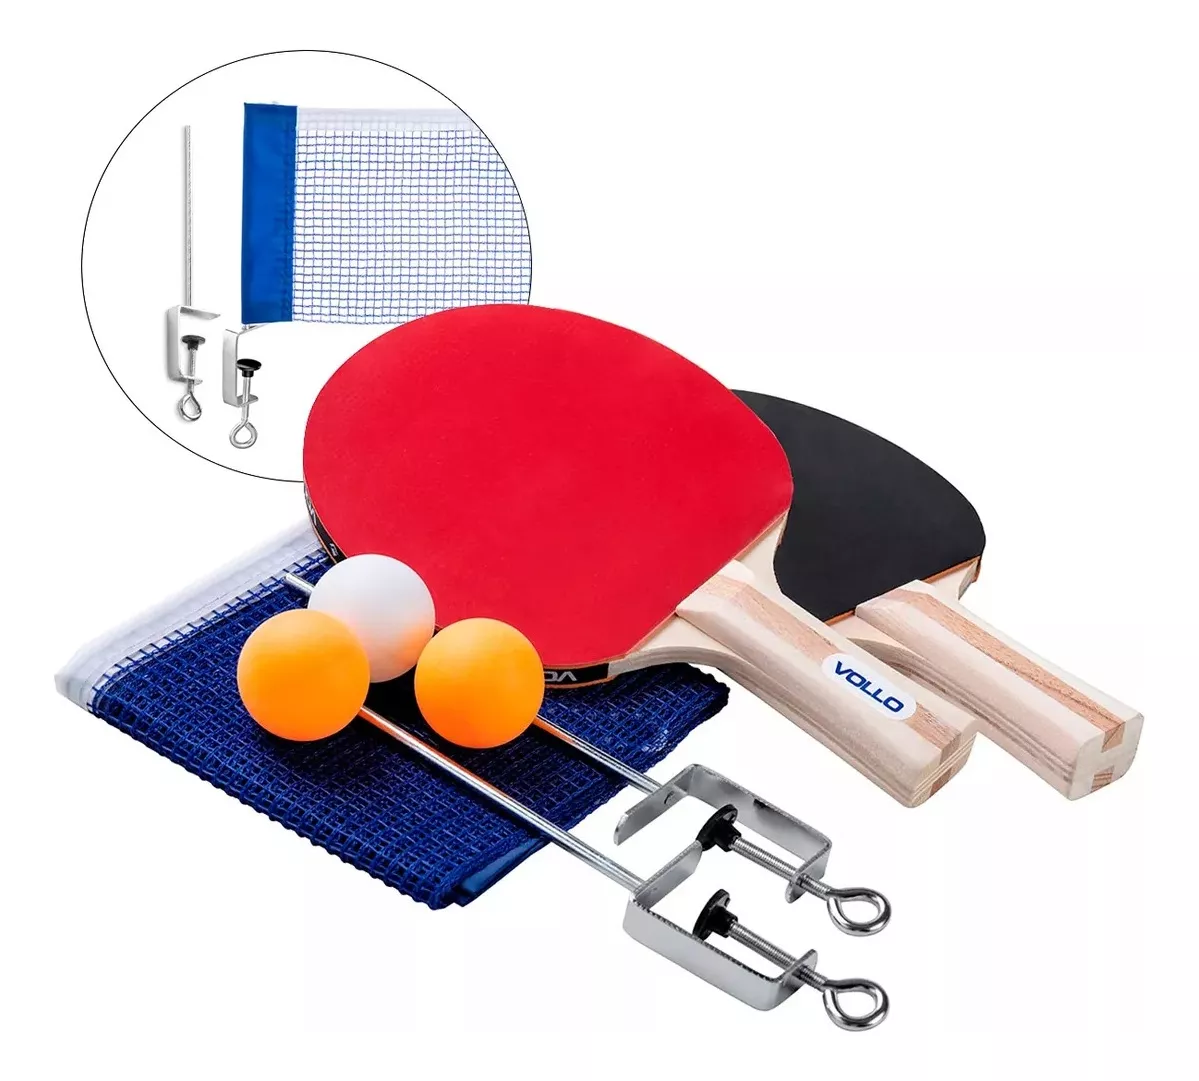 Terceira imagem para pesquisa de ping pong